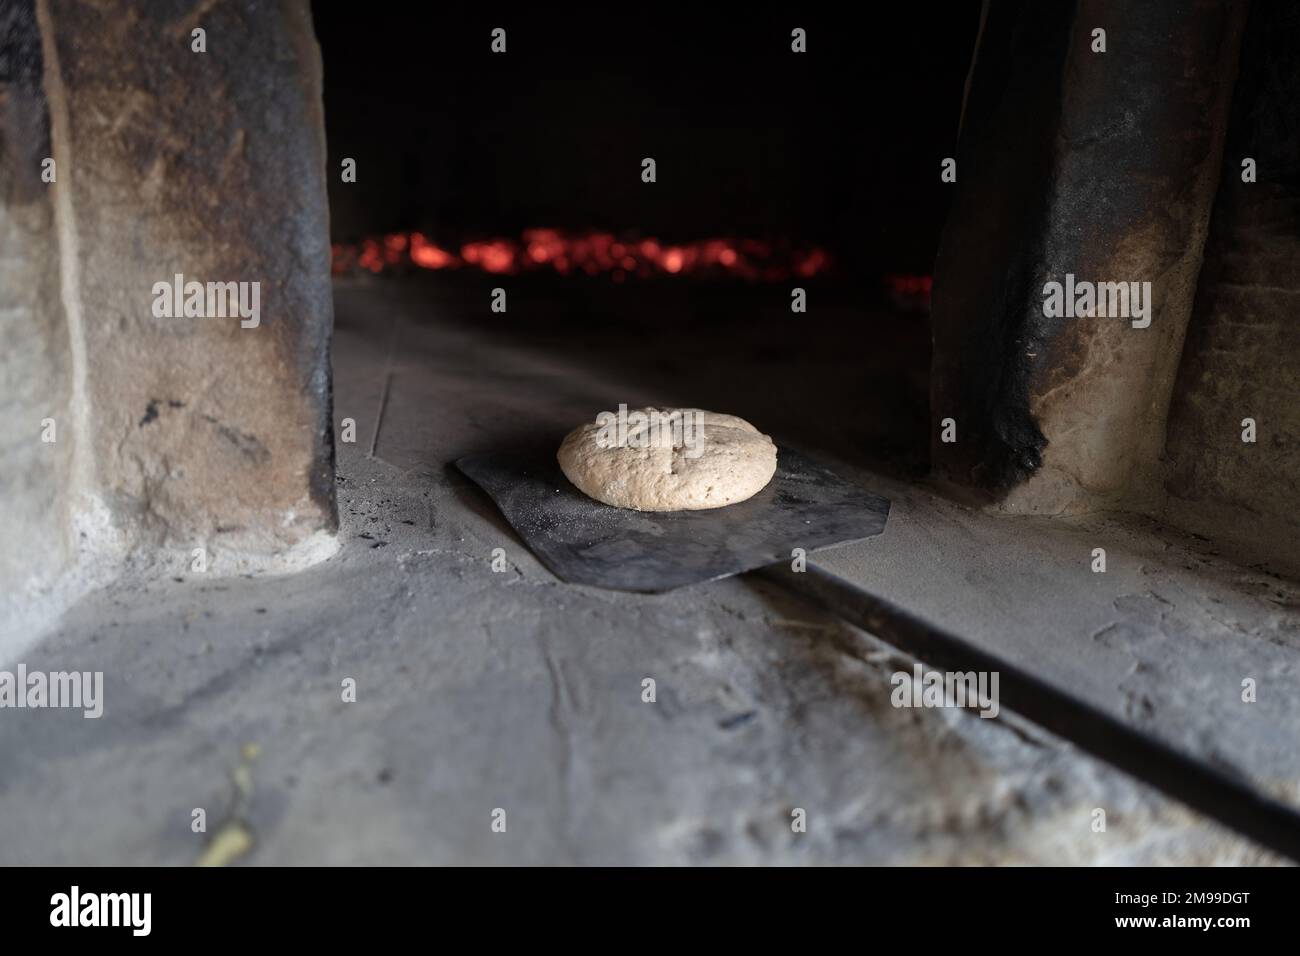 Le pain fait maison entre dans un four traditionnel en bois d'une maison de campagne de Toscane Banque D'Images